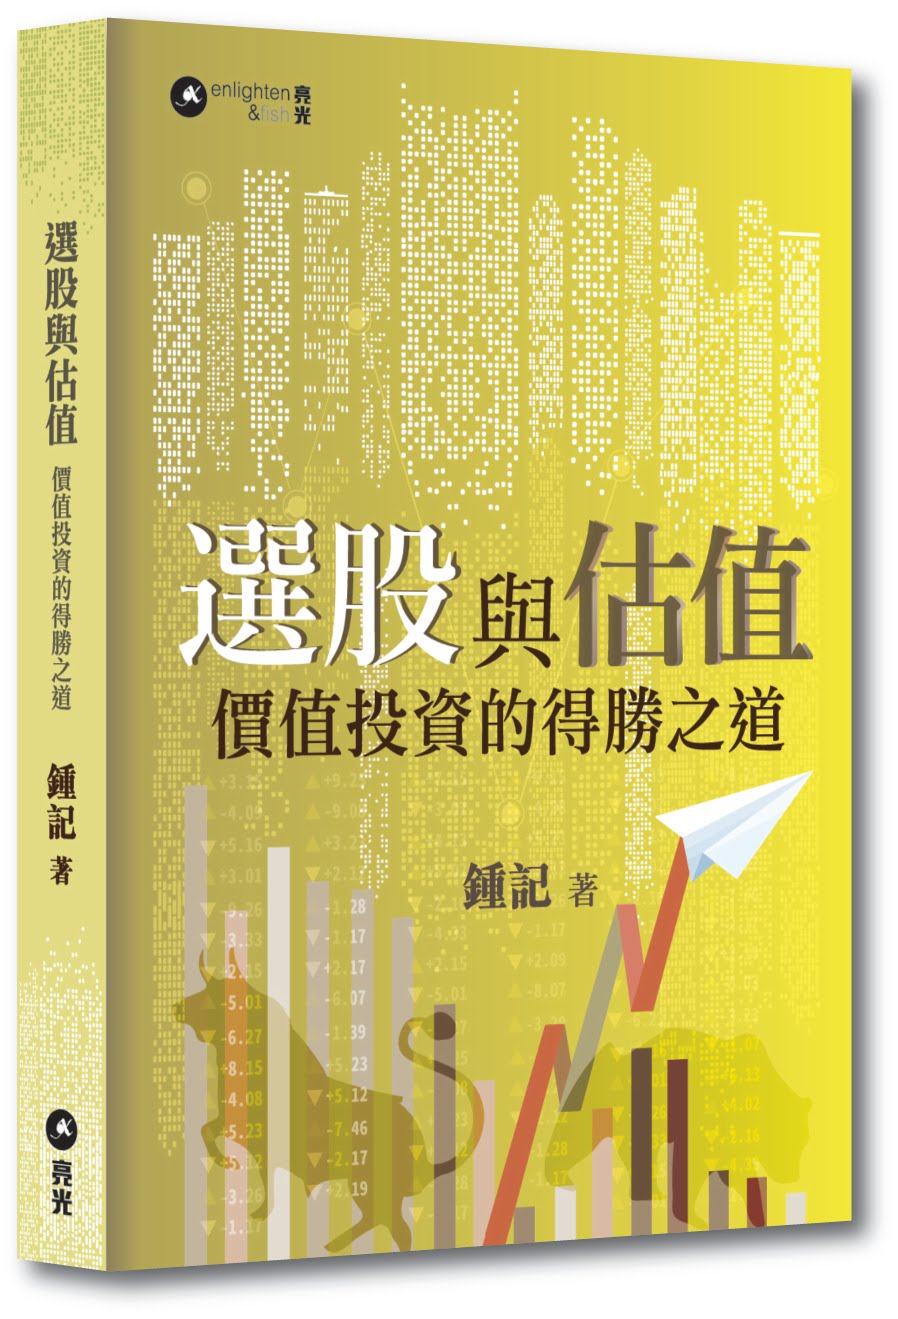 第二本書《選股與估值》入選誠品香港「2017年度TOP 100 暢銷書榜」、商務印書館「2017年度暢銷書」，圖書館「書籍借閱排行榜首100位」（非小說類2019），多謝支持！